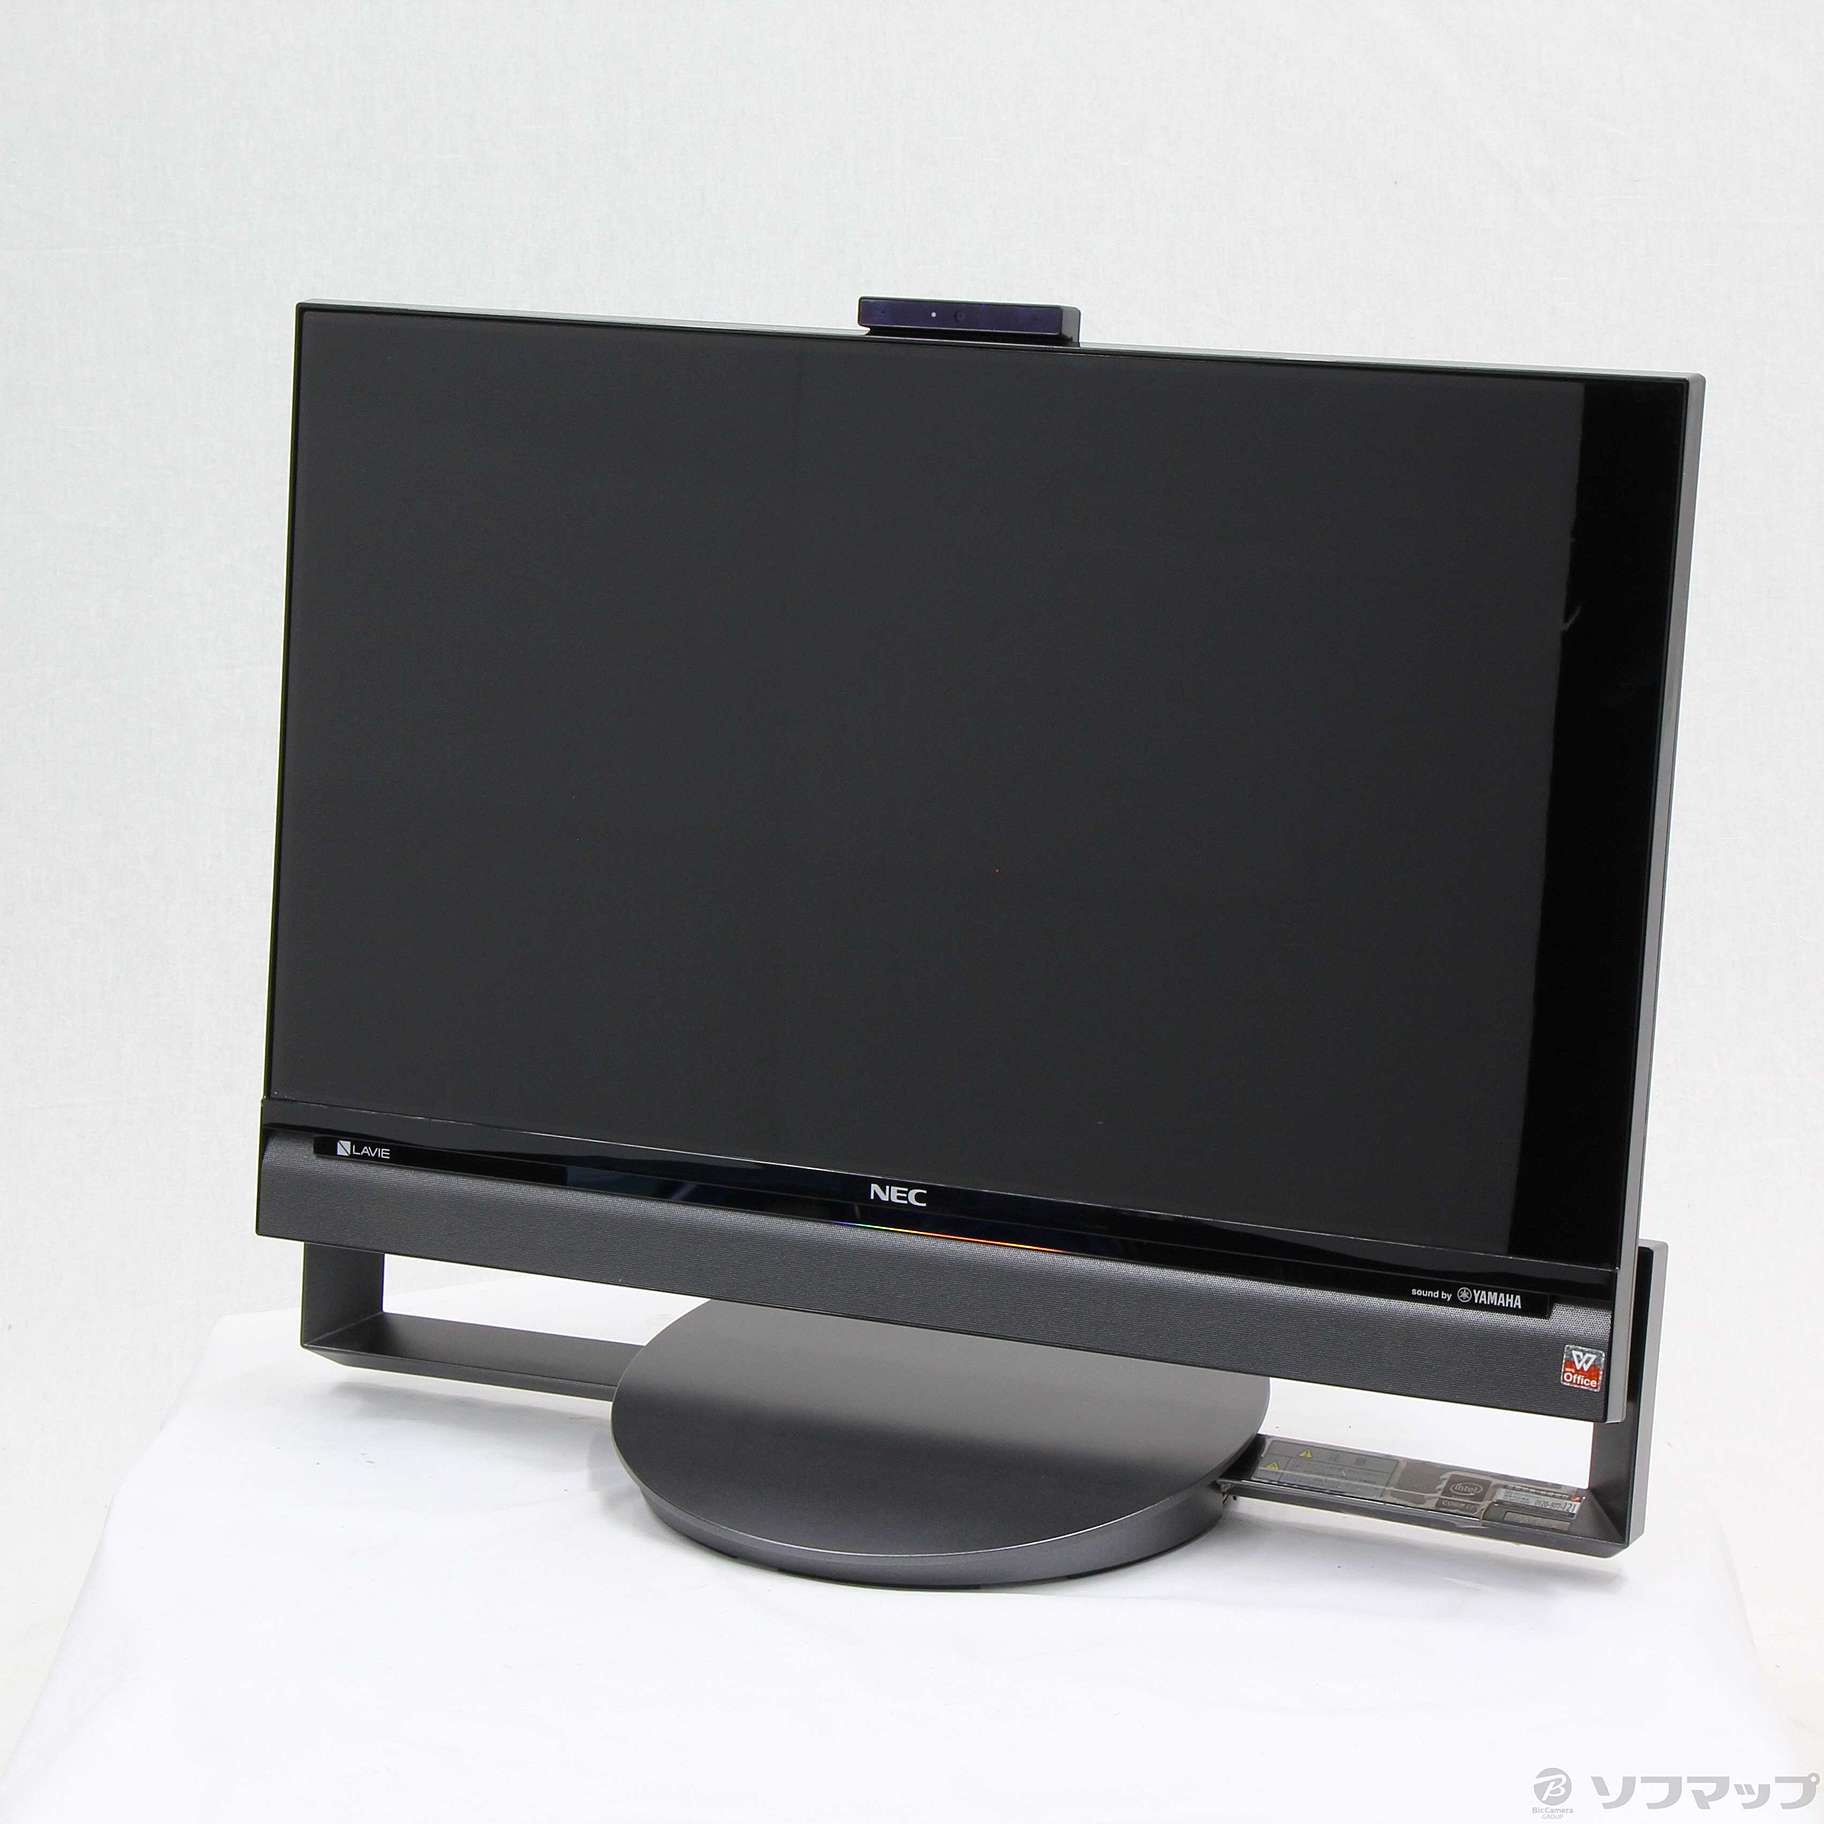 PC-DA770CAB NEC LAVIE Desk All-in-one